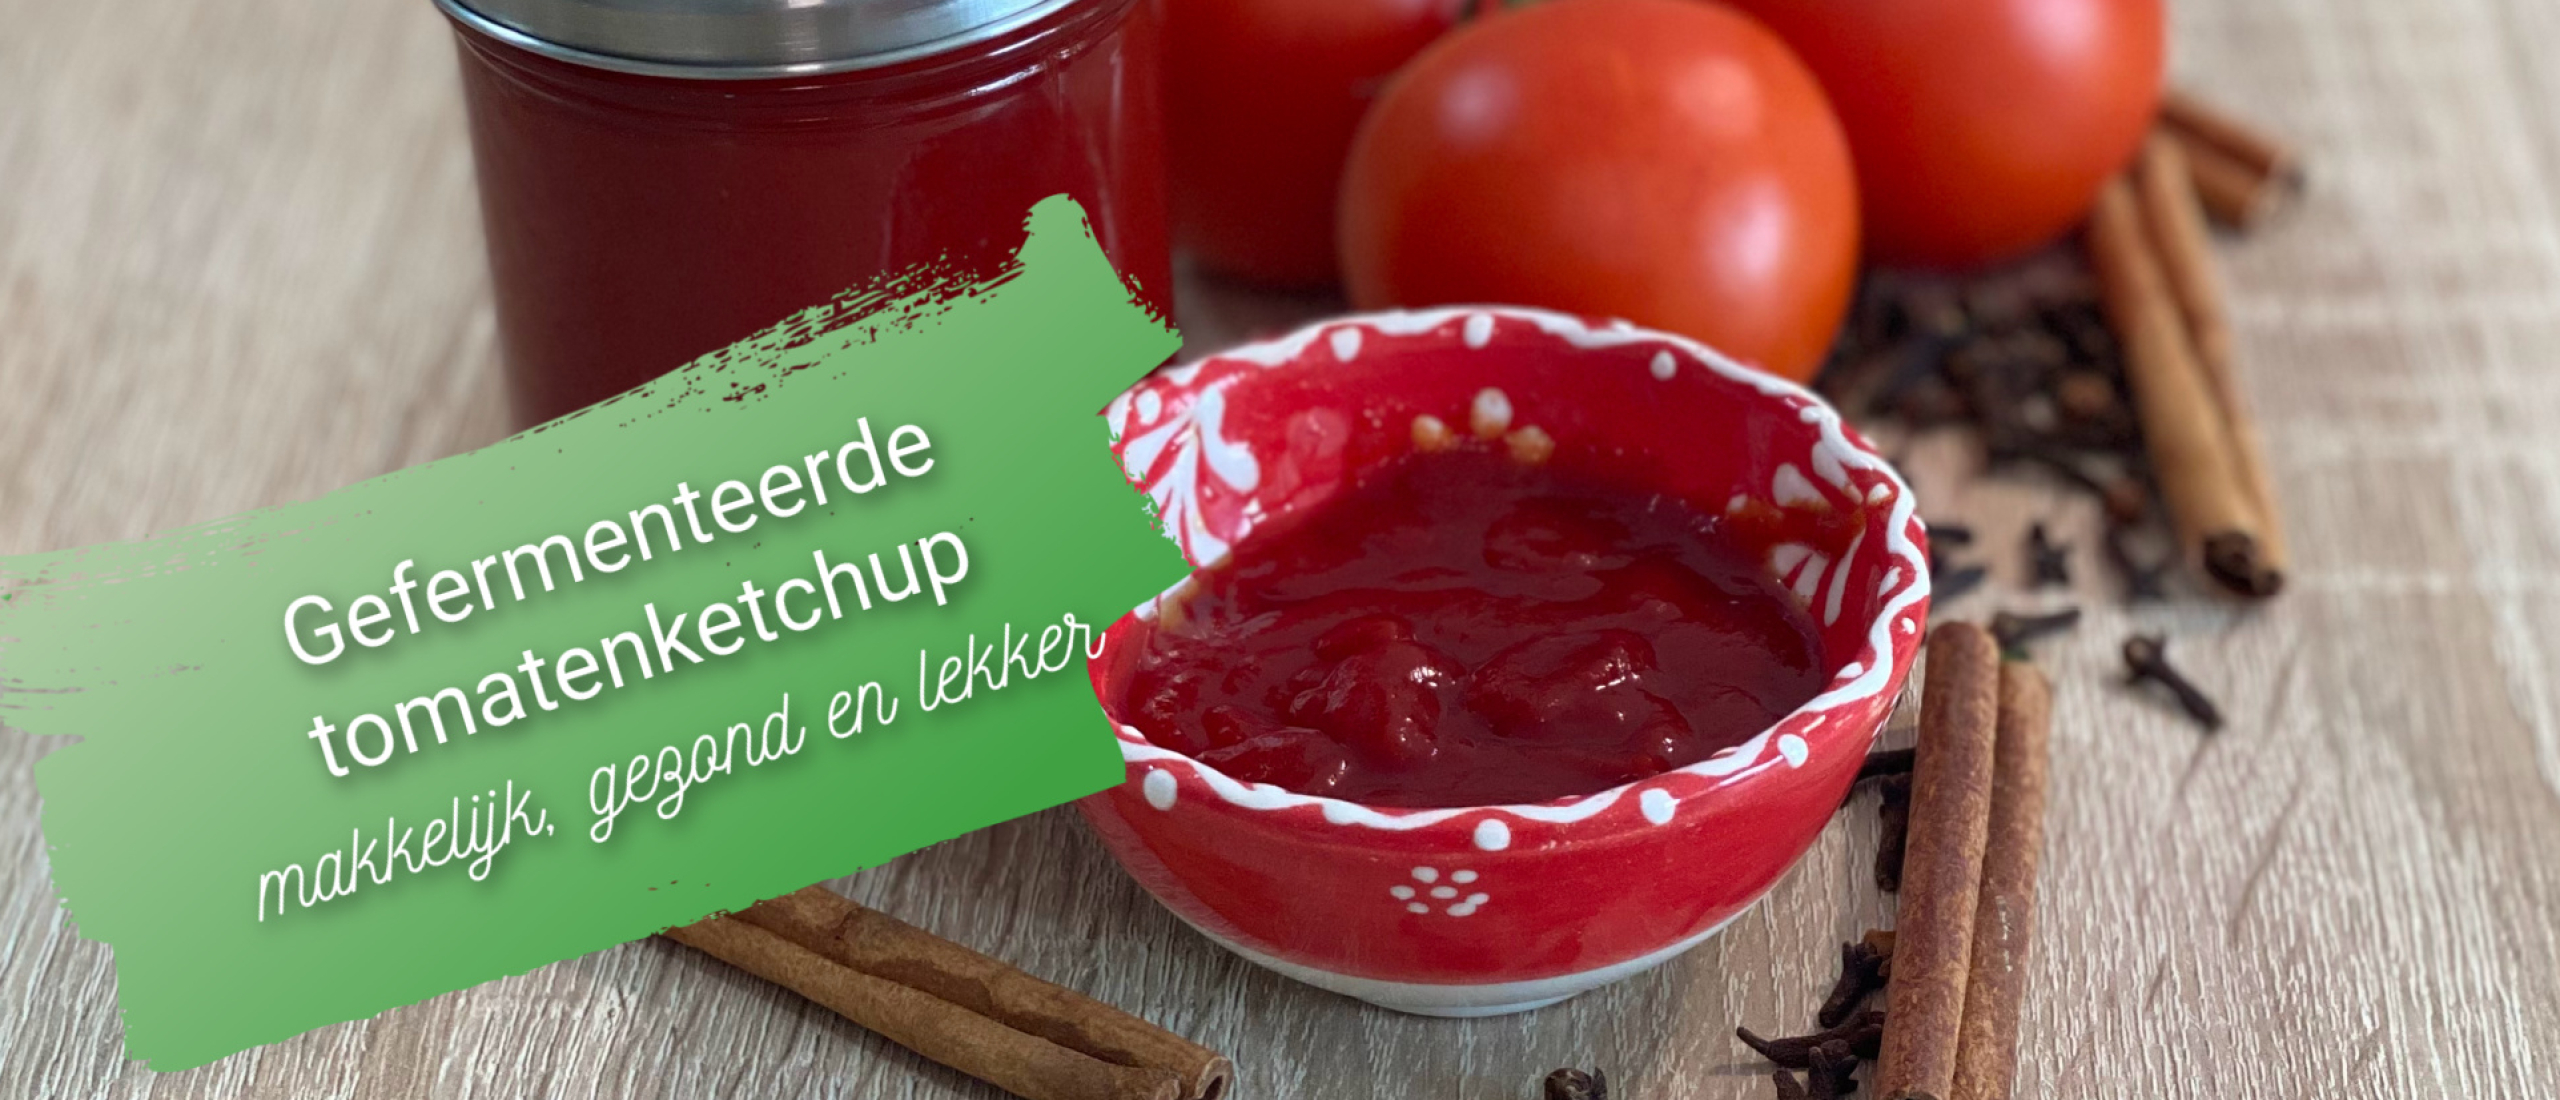 Gefermenteerde tomatenketchup, makkelijk, gezond en lang houdbaar!